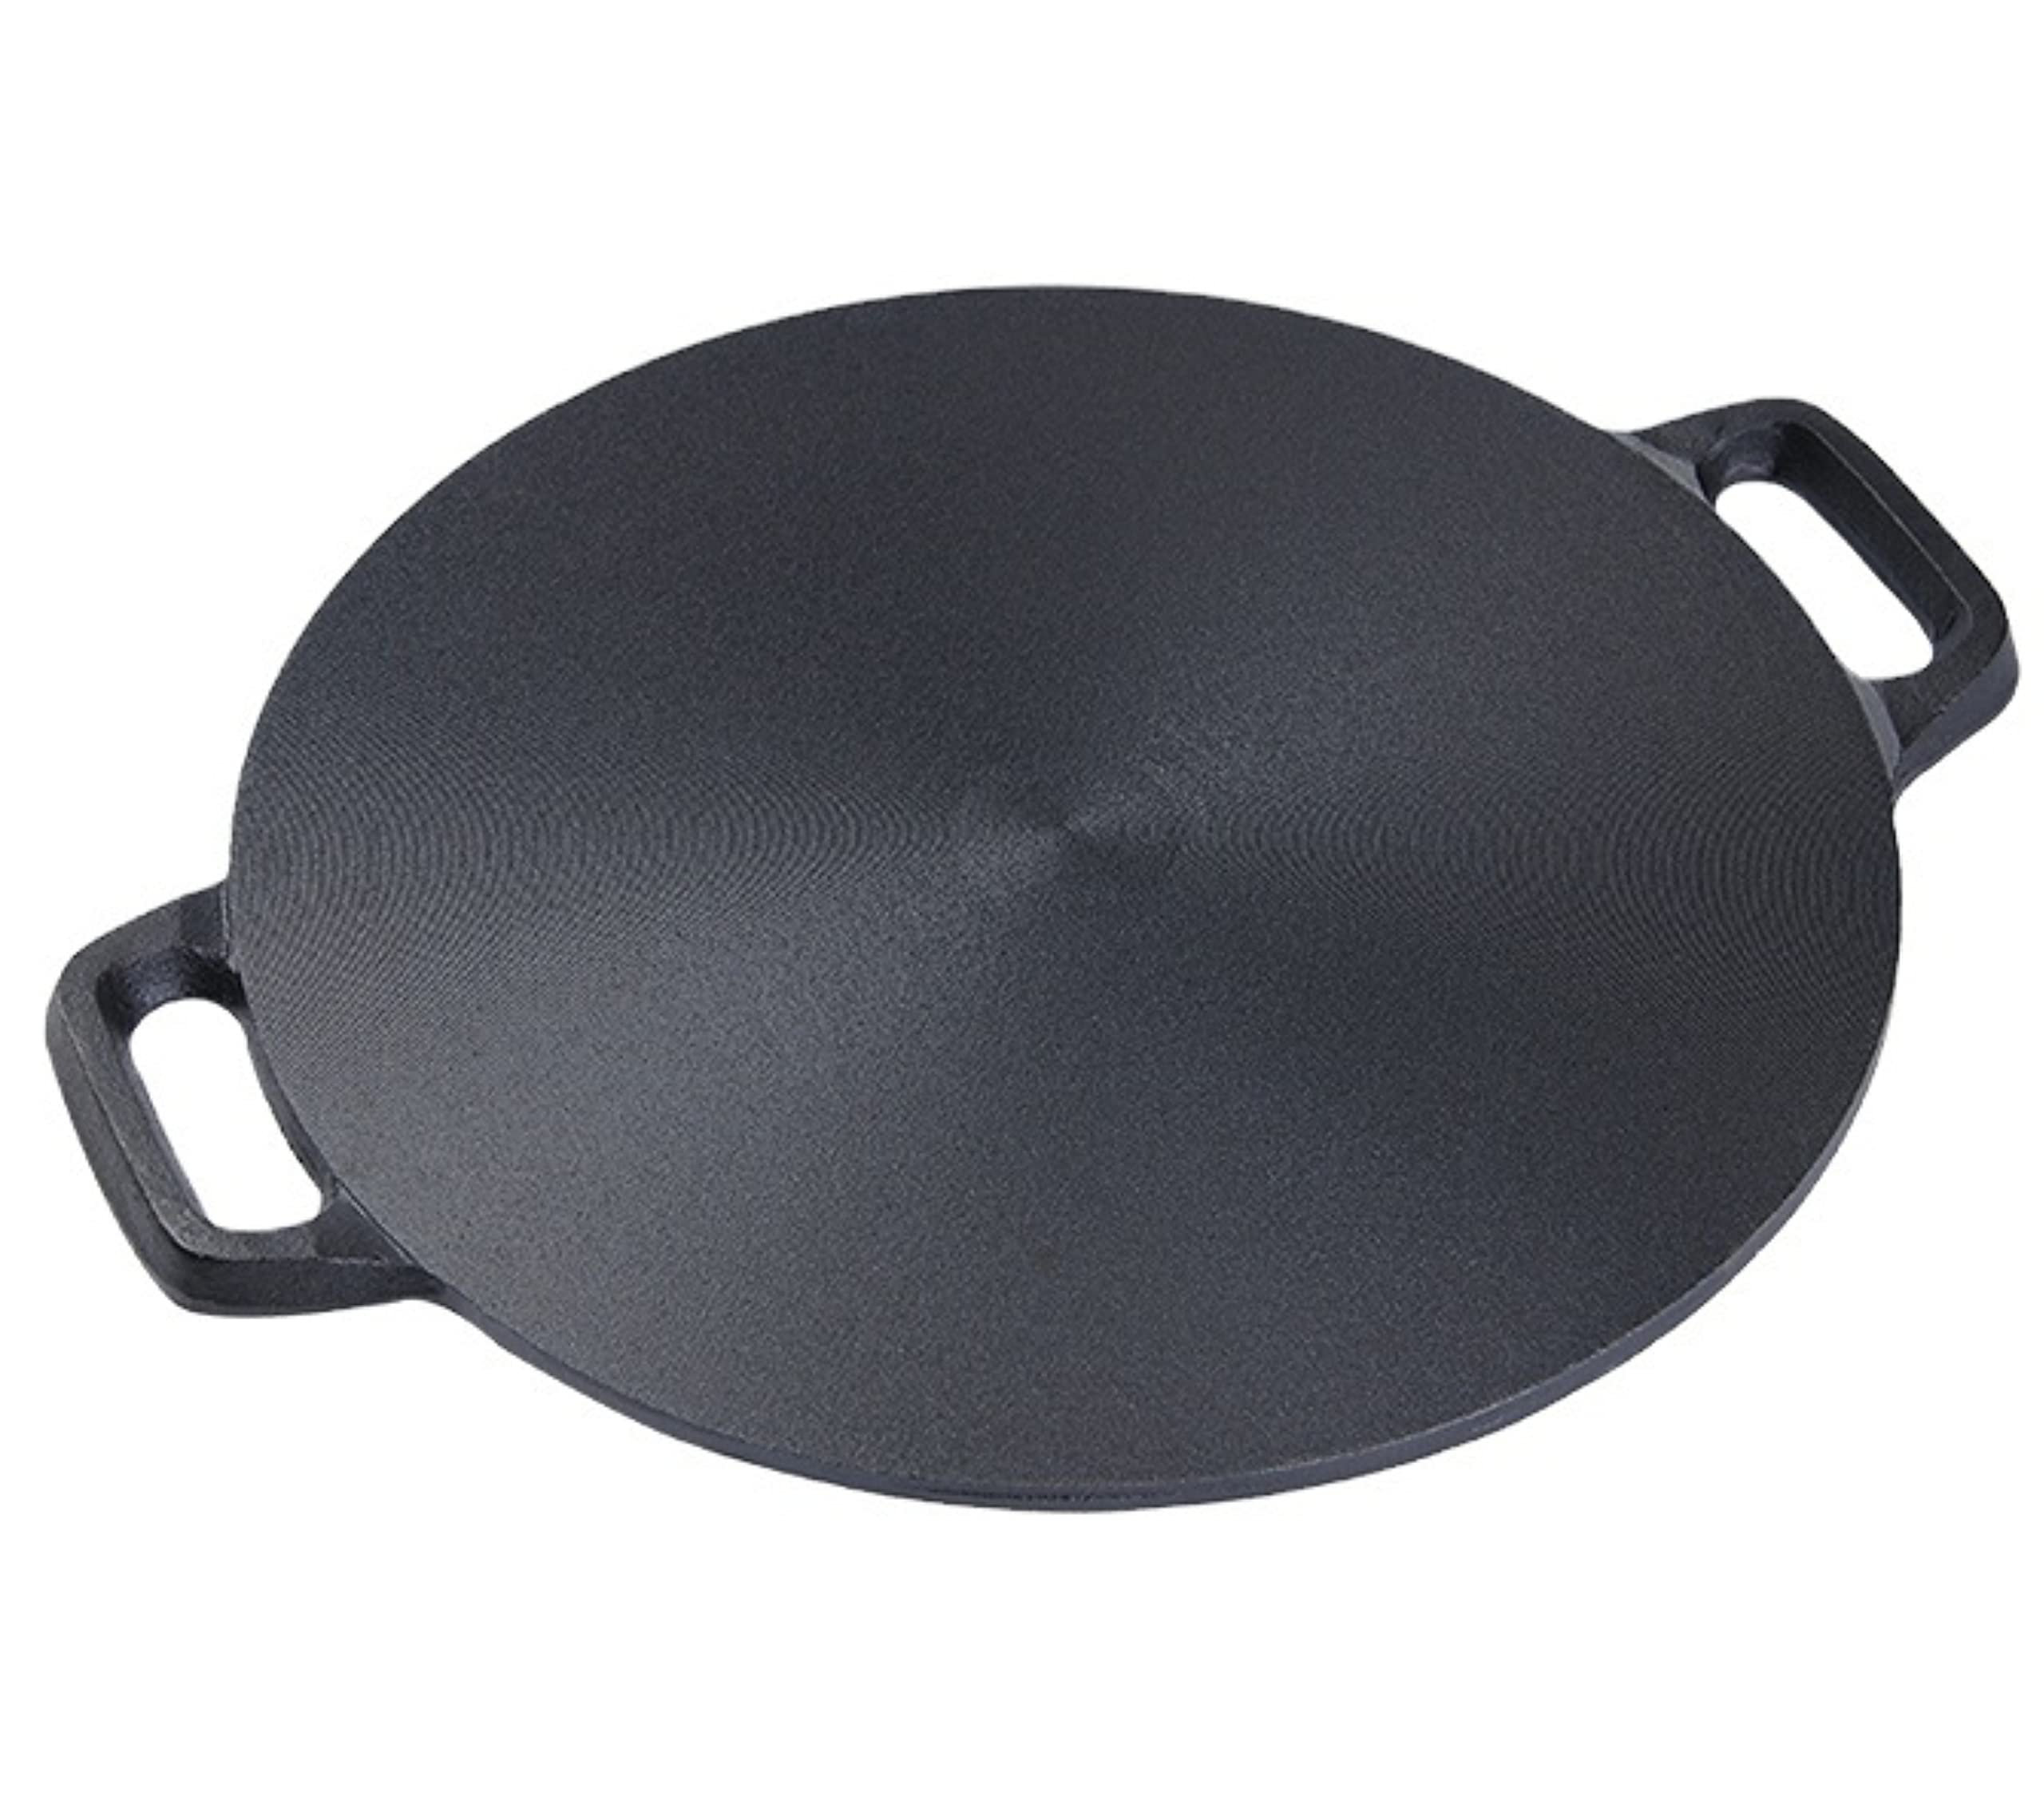 Bruntmor Double Handled non-Stick Enameled Black Cast Iron Round Tarte  Tatin Dish Pan Mini Roasting Dish, Black